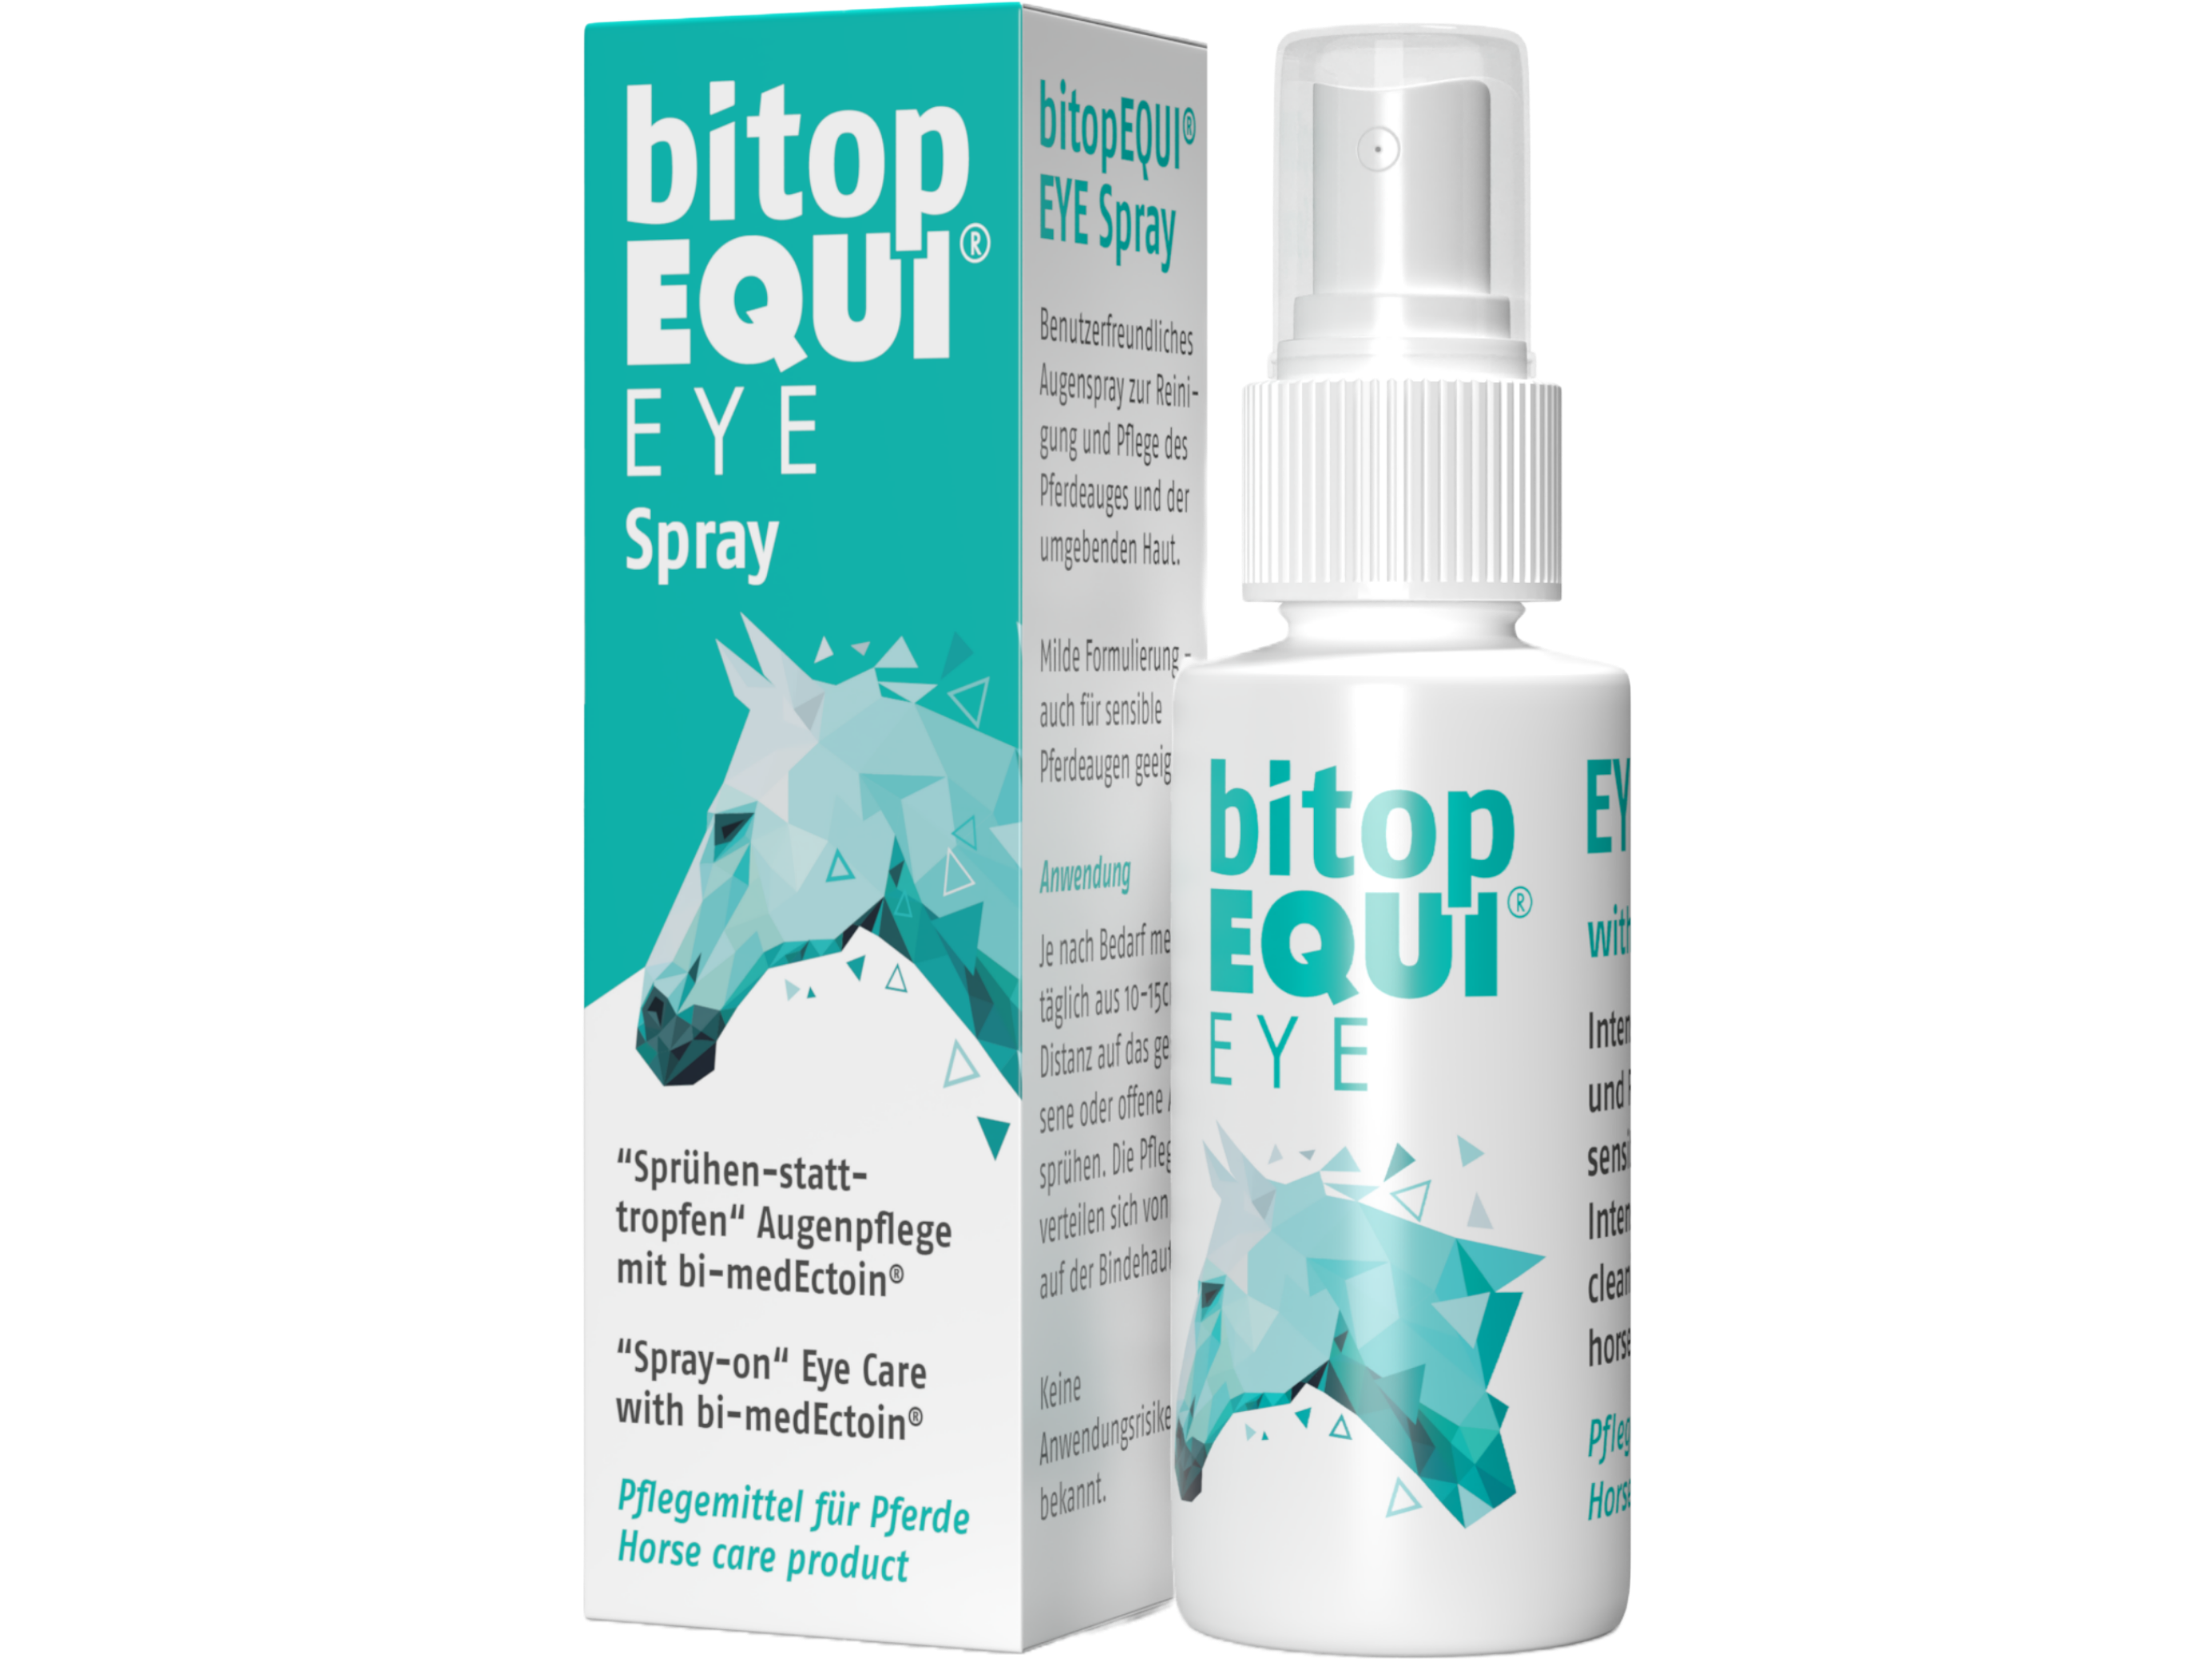 Sprühen statt Tropfen – das bitopEQUI® EYE Spray ist ein benutzerfreundliches Augenspray zur Reinigung und Pflege des Pferdeauges und der umgebenden Haut Milde Formulierung - auch für sensible Pferdeaugen geeignet.